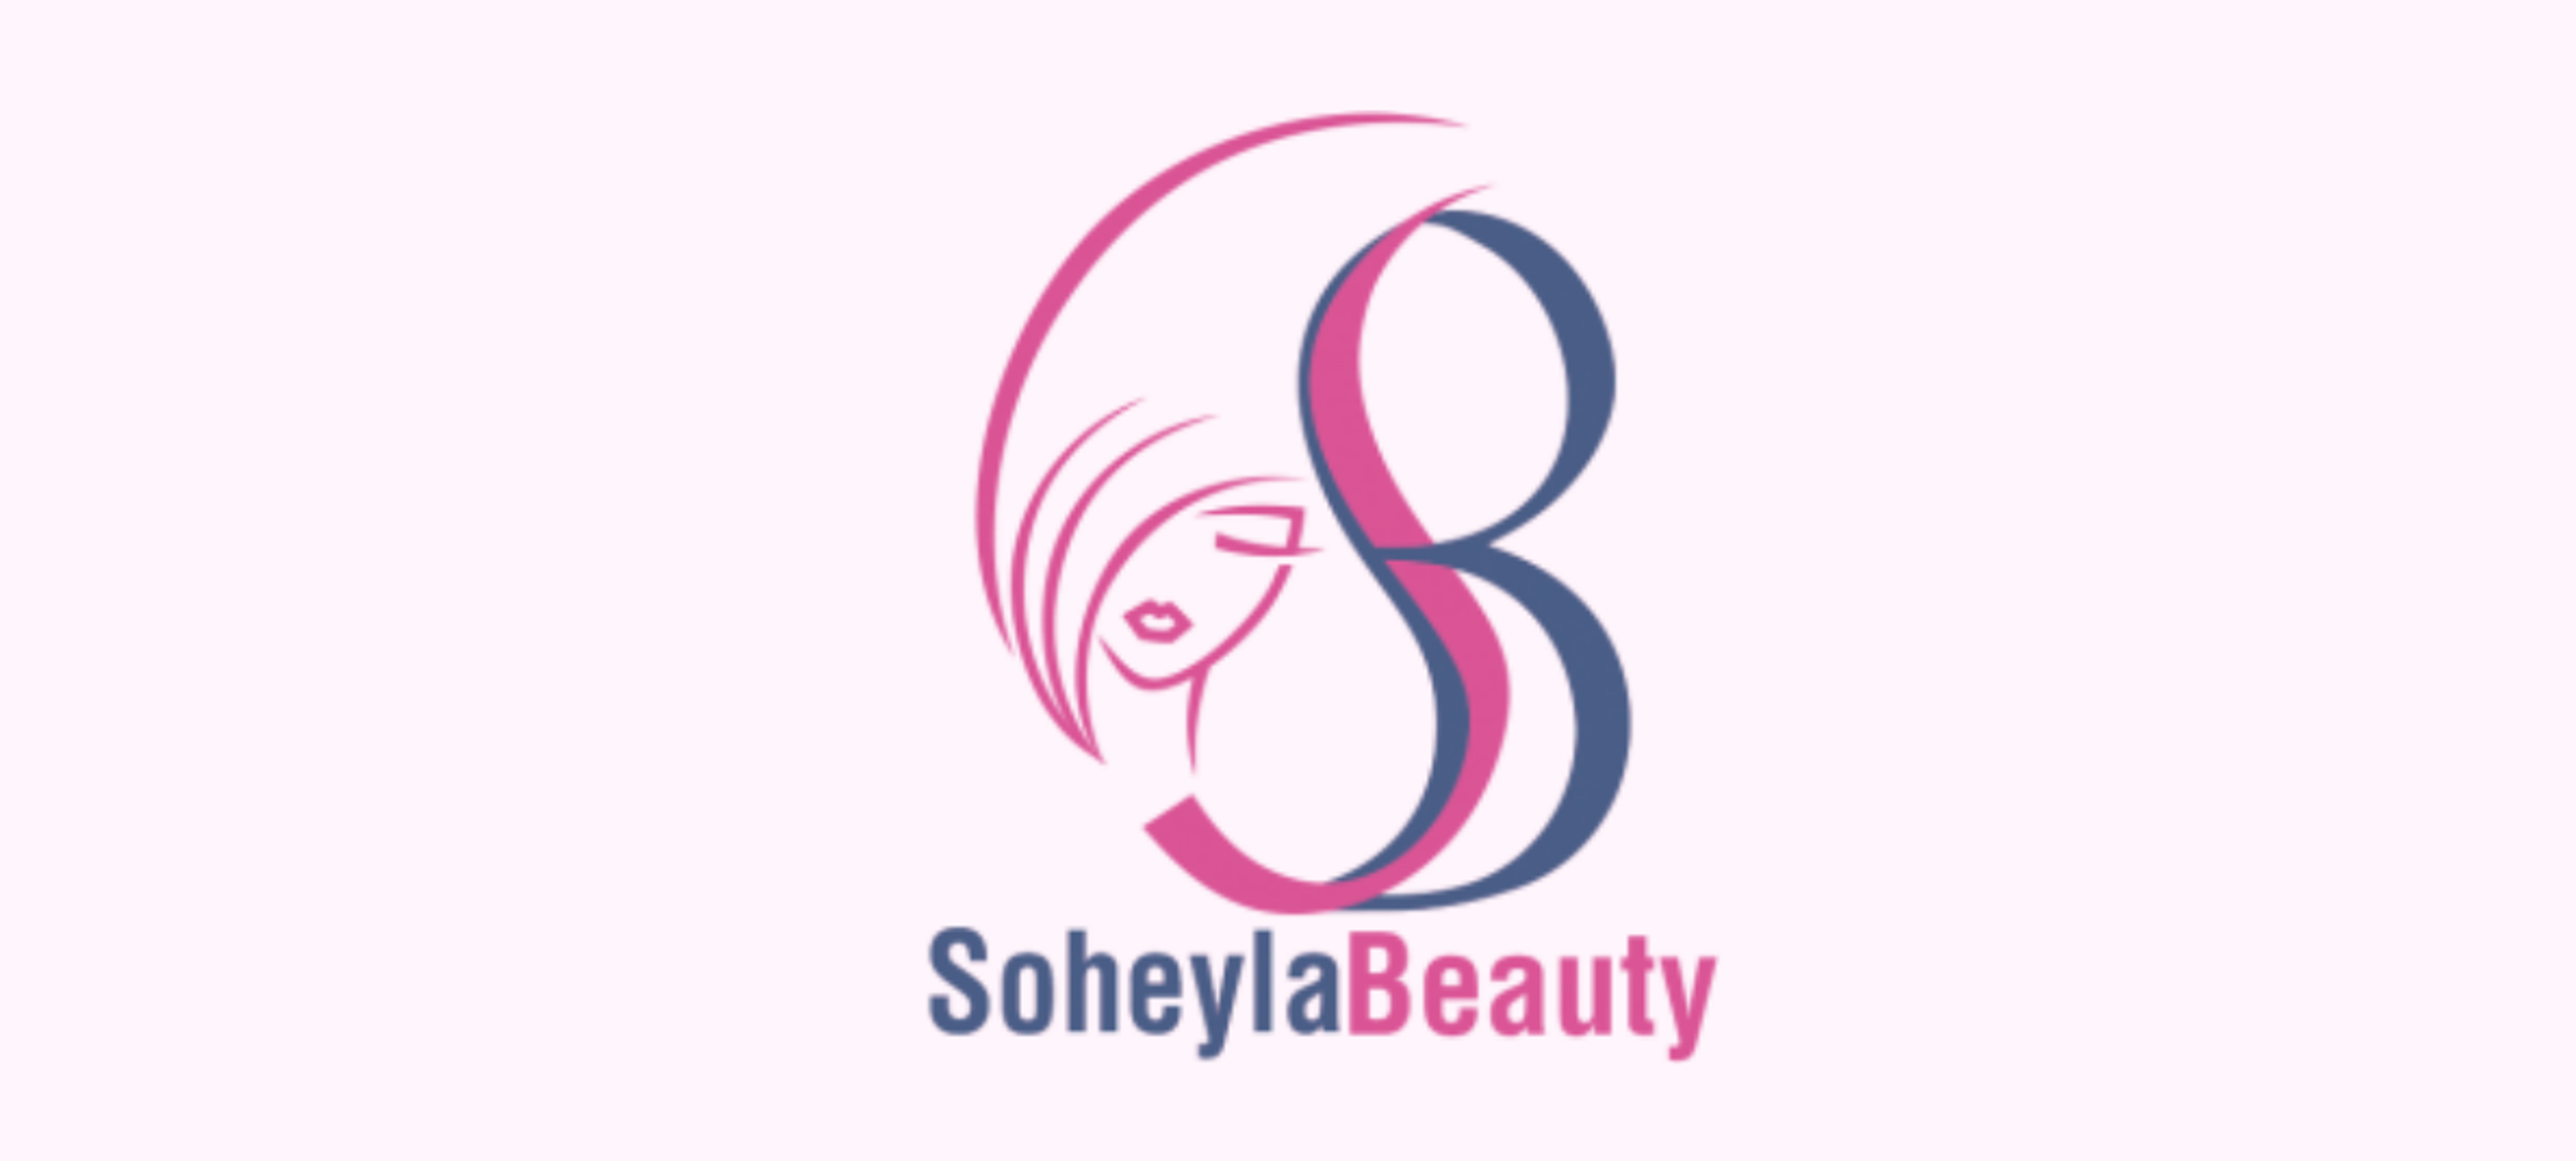 S Beauty Klinik - Soheyla Beauty